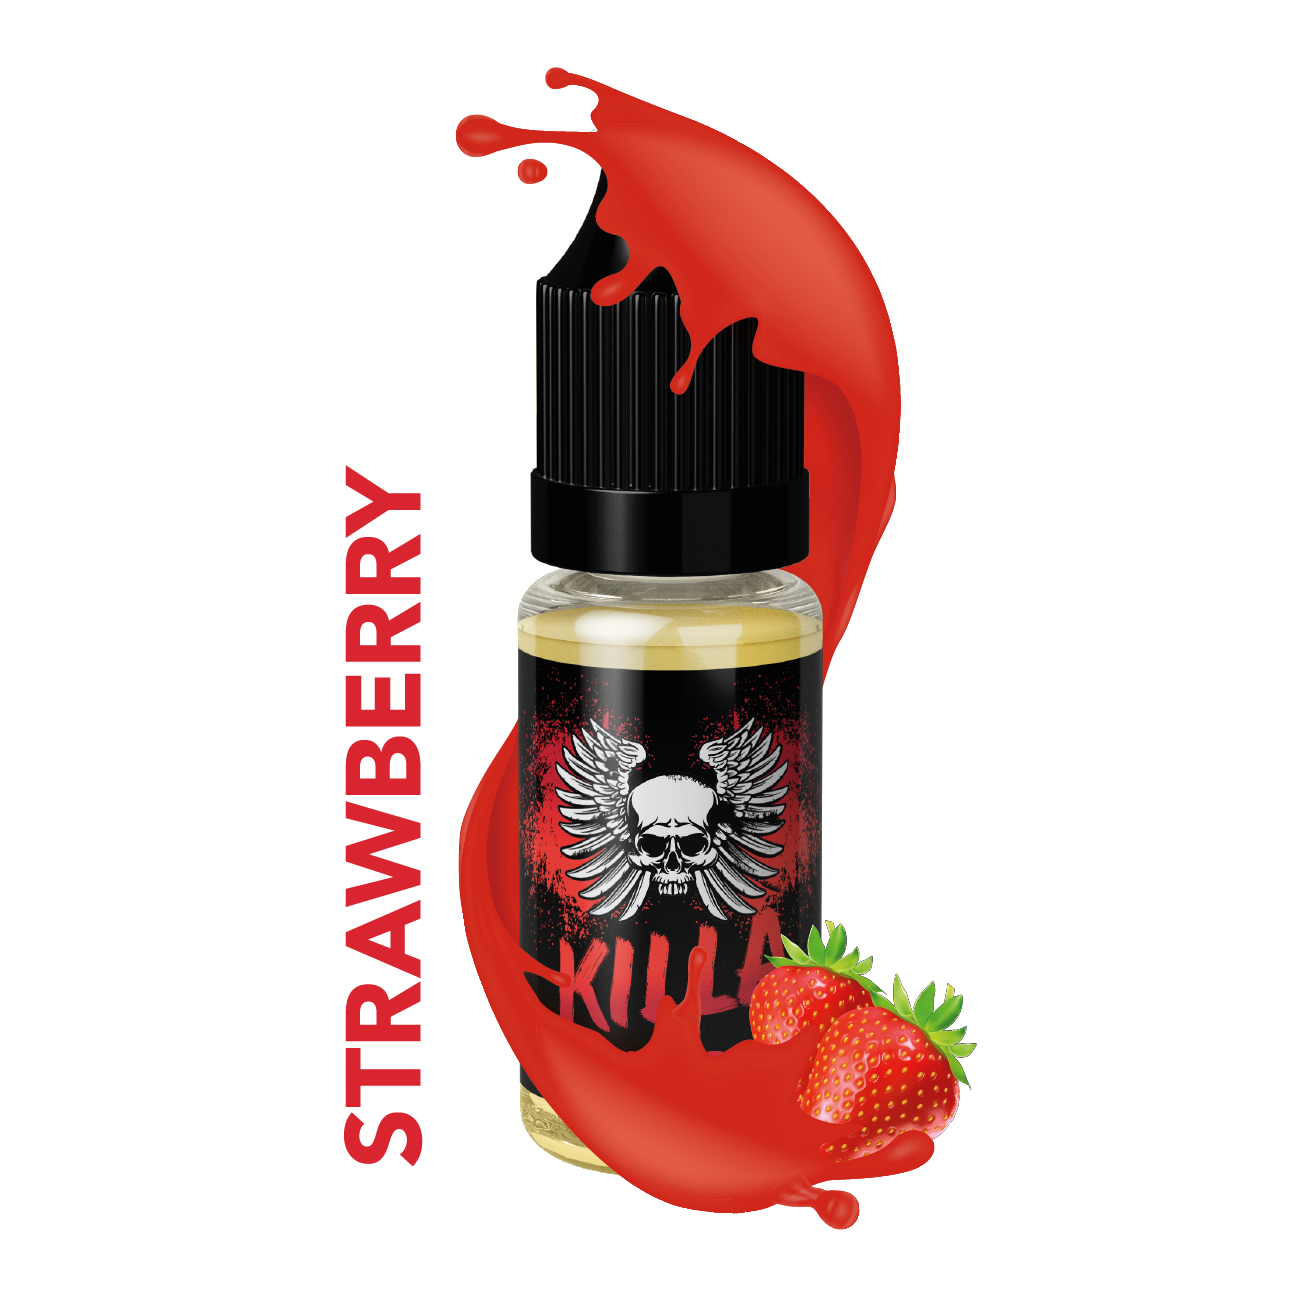 Killa Switch Strawberry E-Liquidimage